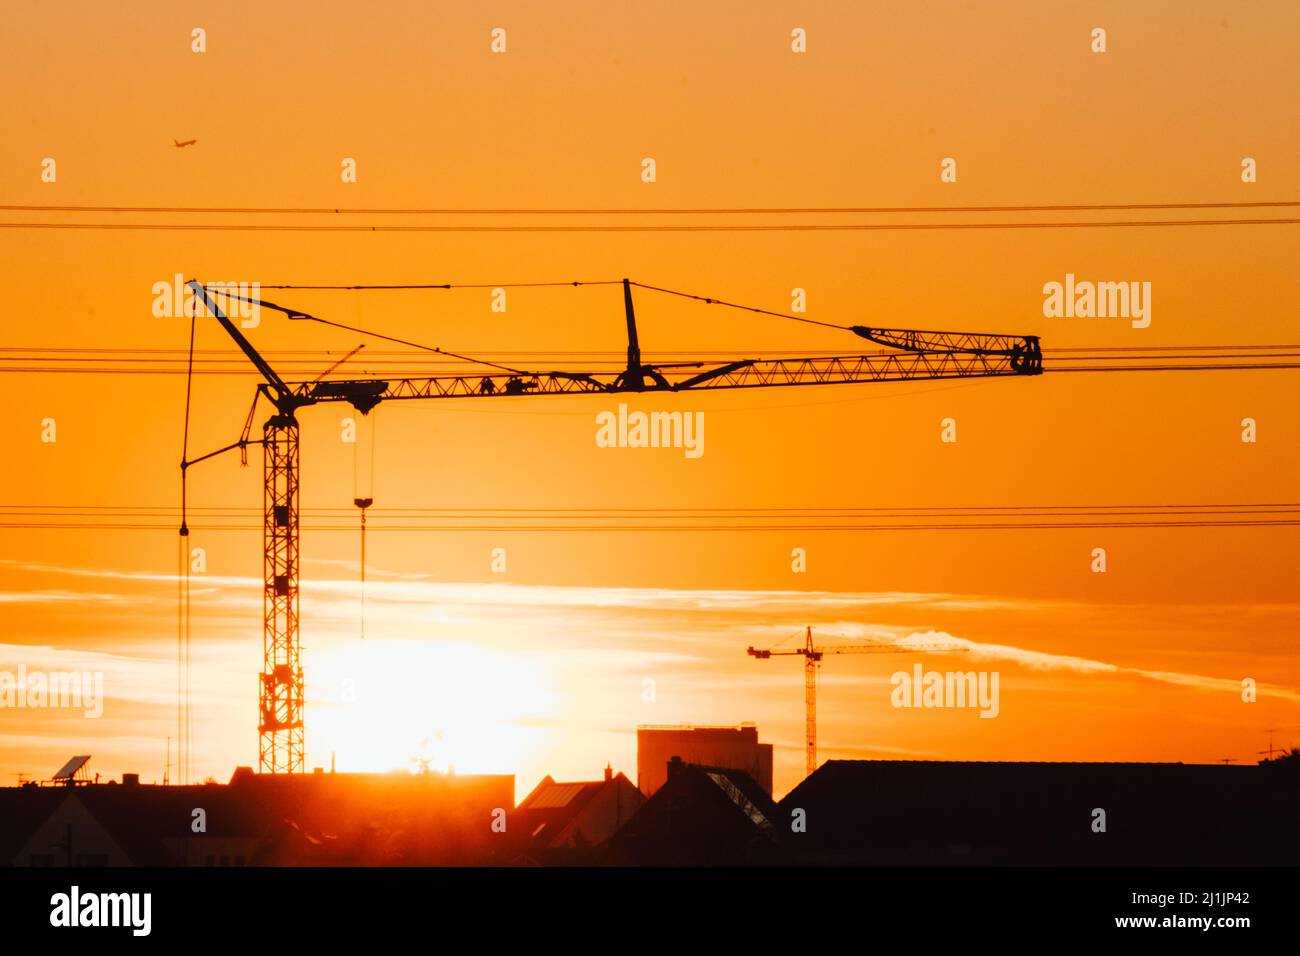 Hohe Baukran Silhouette in orange Himmel Sonnenuntergang zeigt Baustelle mit Engineering für moderne Gebäude und Stadtentwicklung Architekten Stockfoto